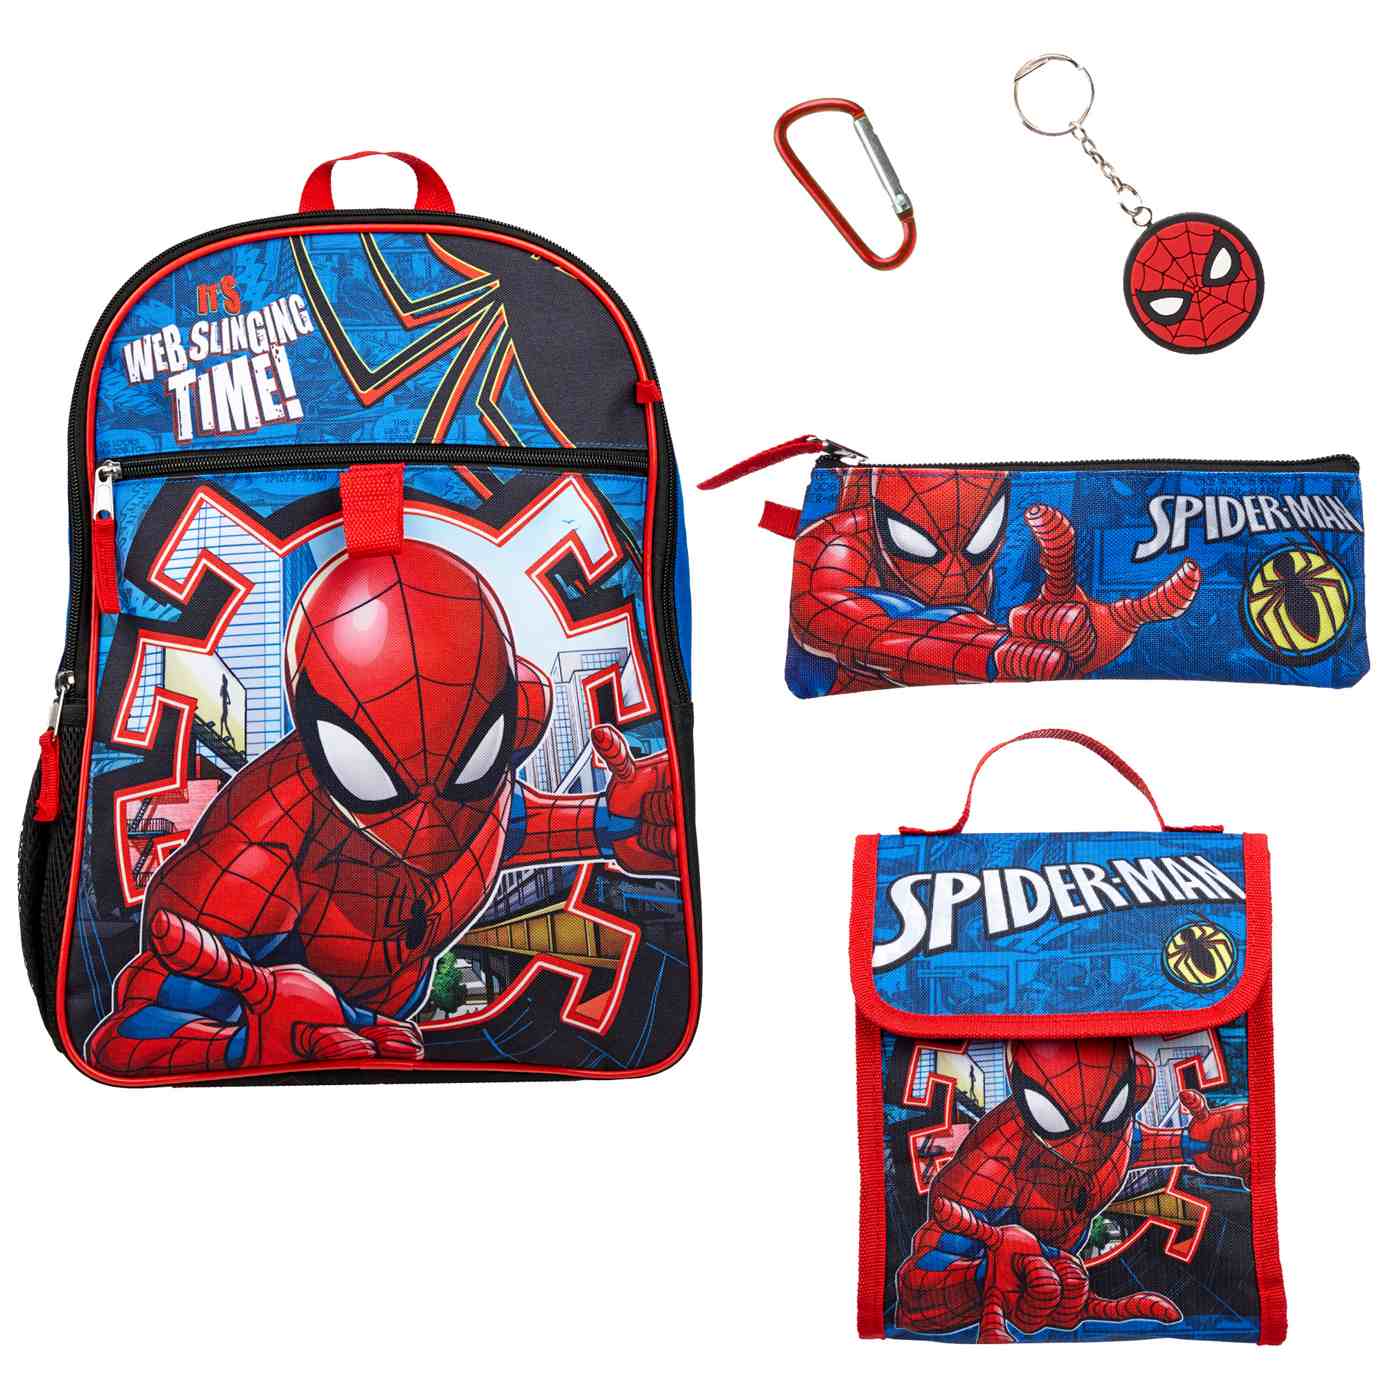 Marvel Spider-Man Backpack Set; image 3 of 5